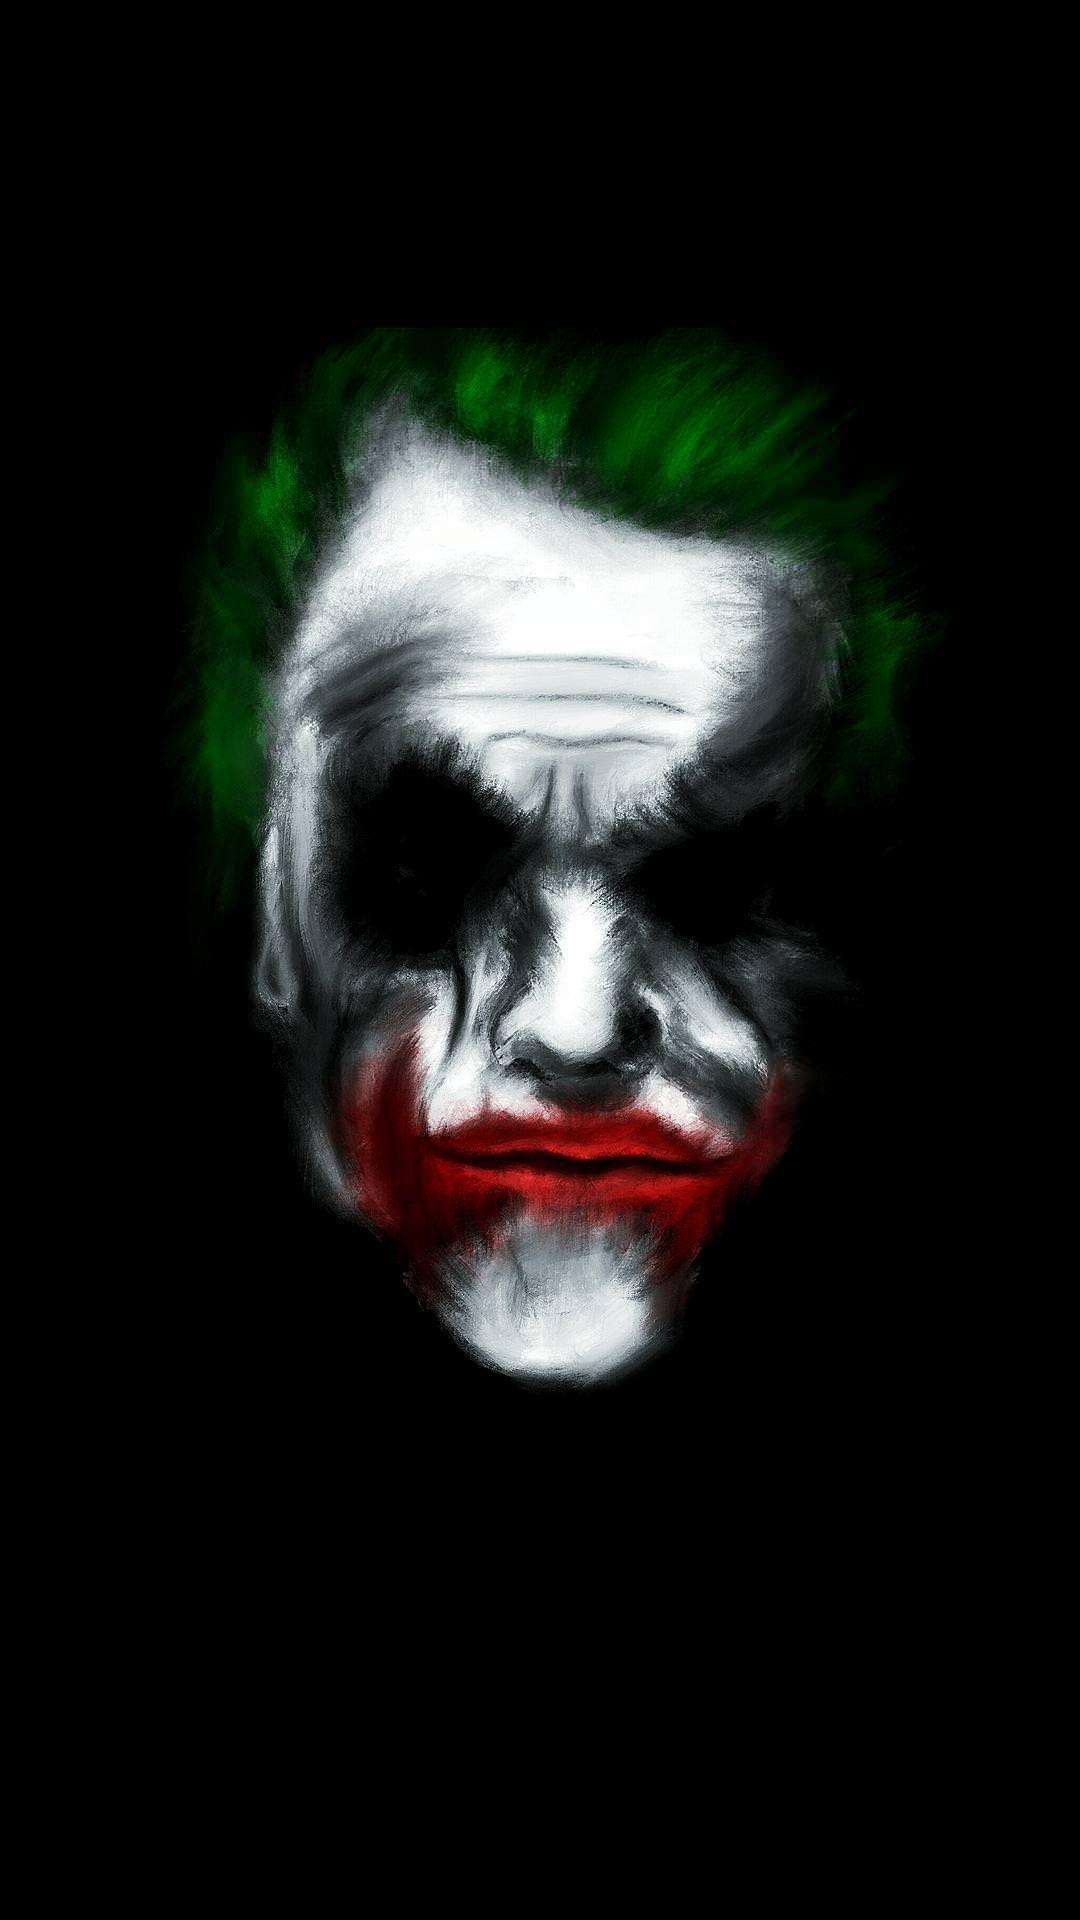 The Joker Amoled Wallpaper [OC]. Joker wallpaper, Joker, Psychedelic illustration